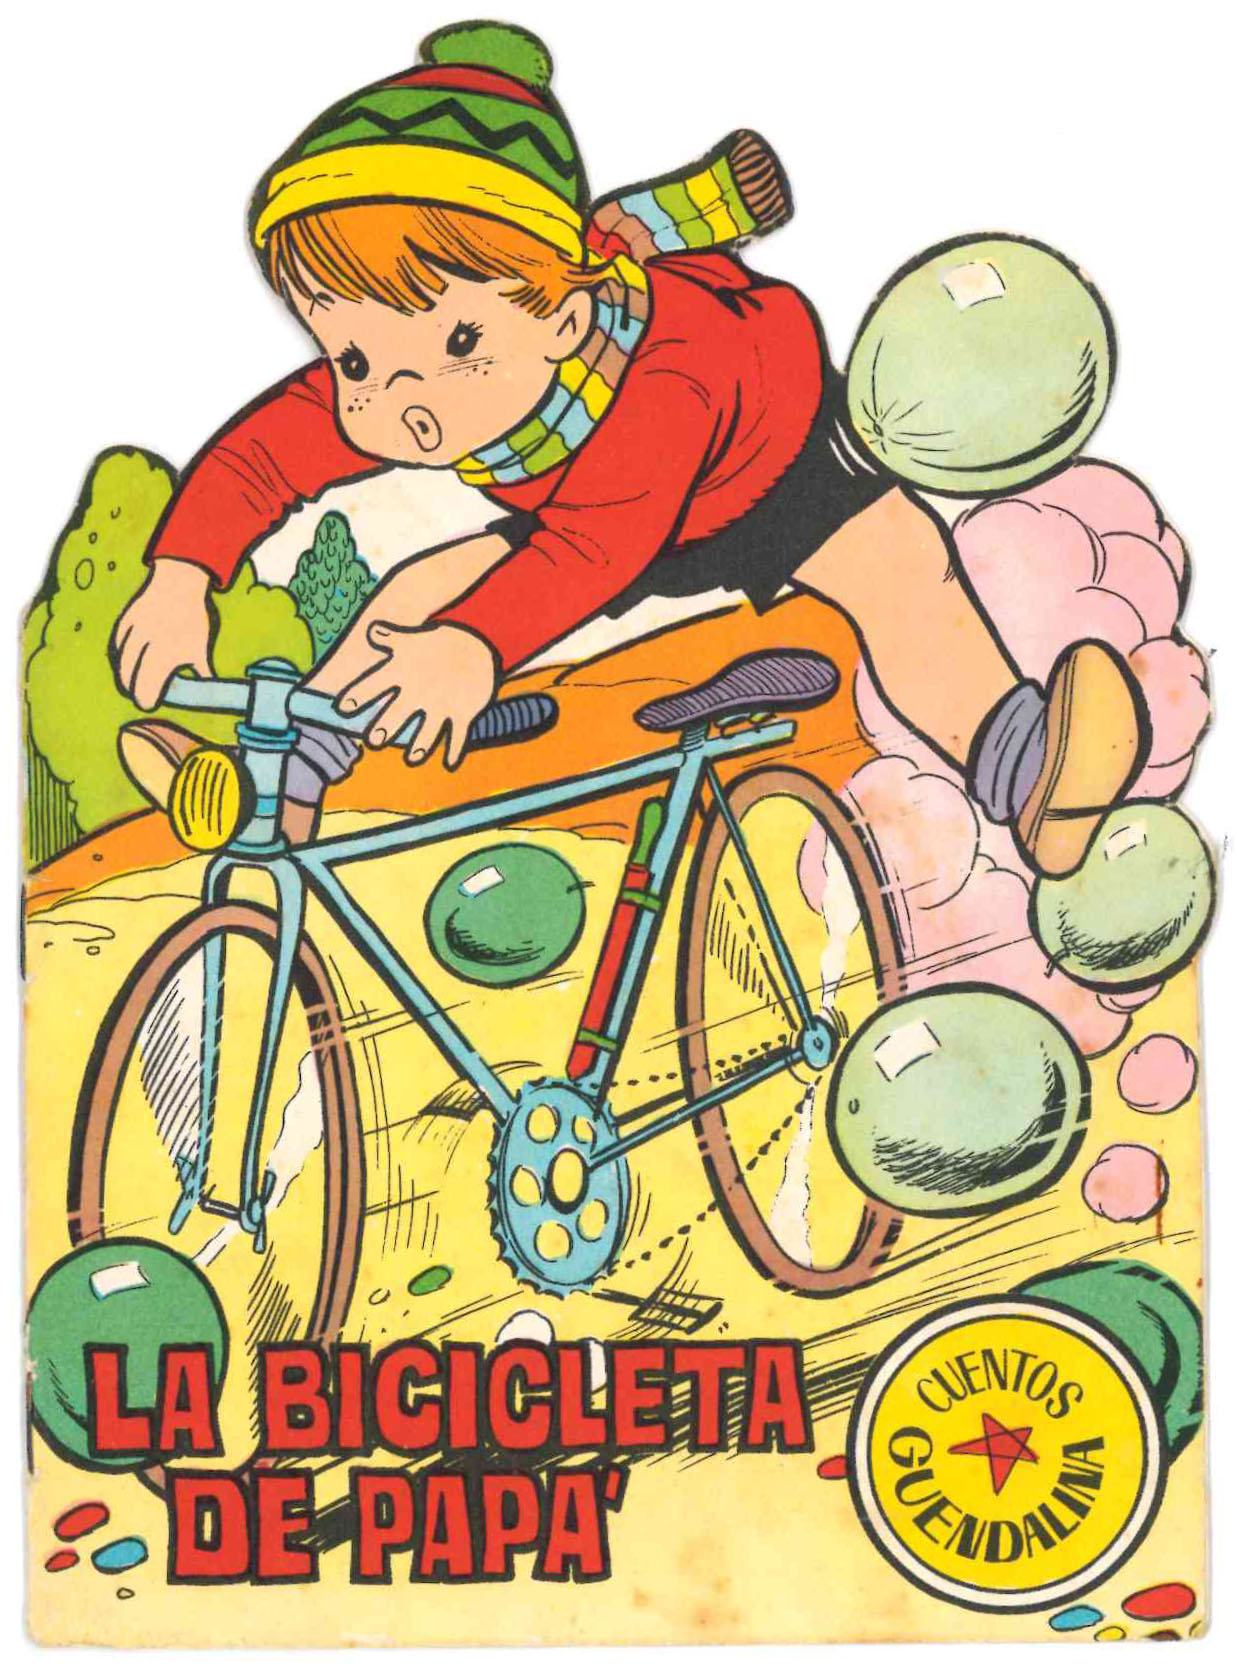 Cuento Troquelado La bicicleta de papá. Dibujos de Ayné. Toray 1965